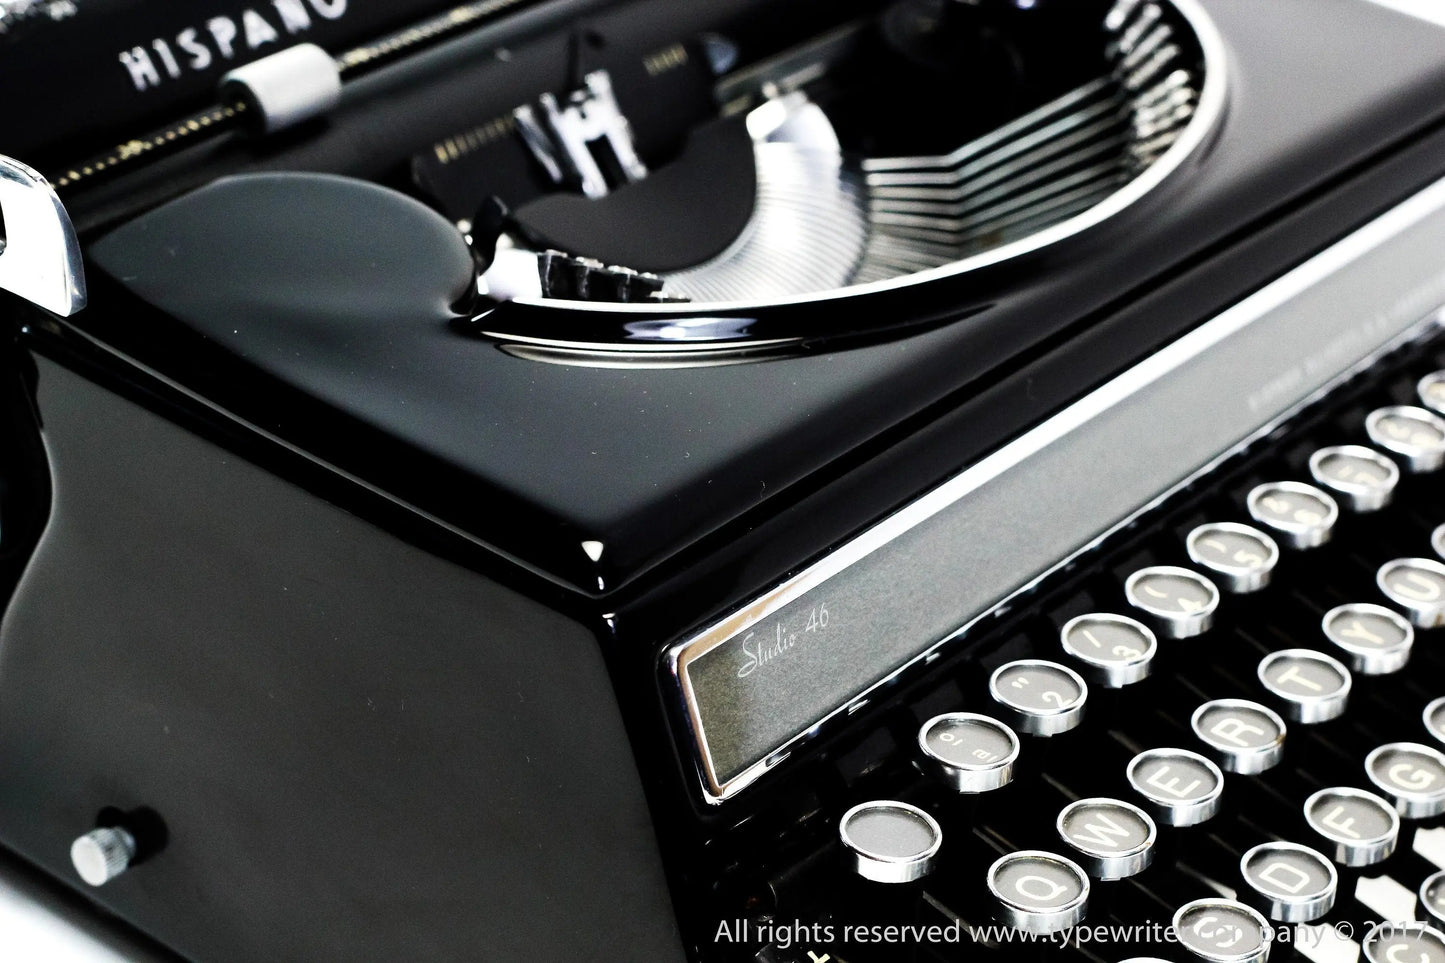 Olivetti Studio 46(42) Glossy Black Vintage Typewriter, Serviced - ElGranero Typewriter.Company